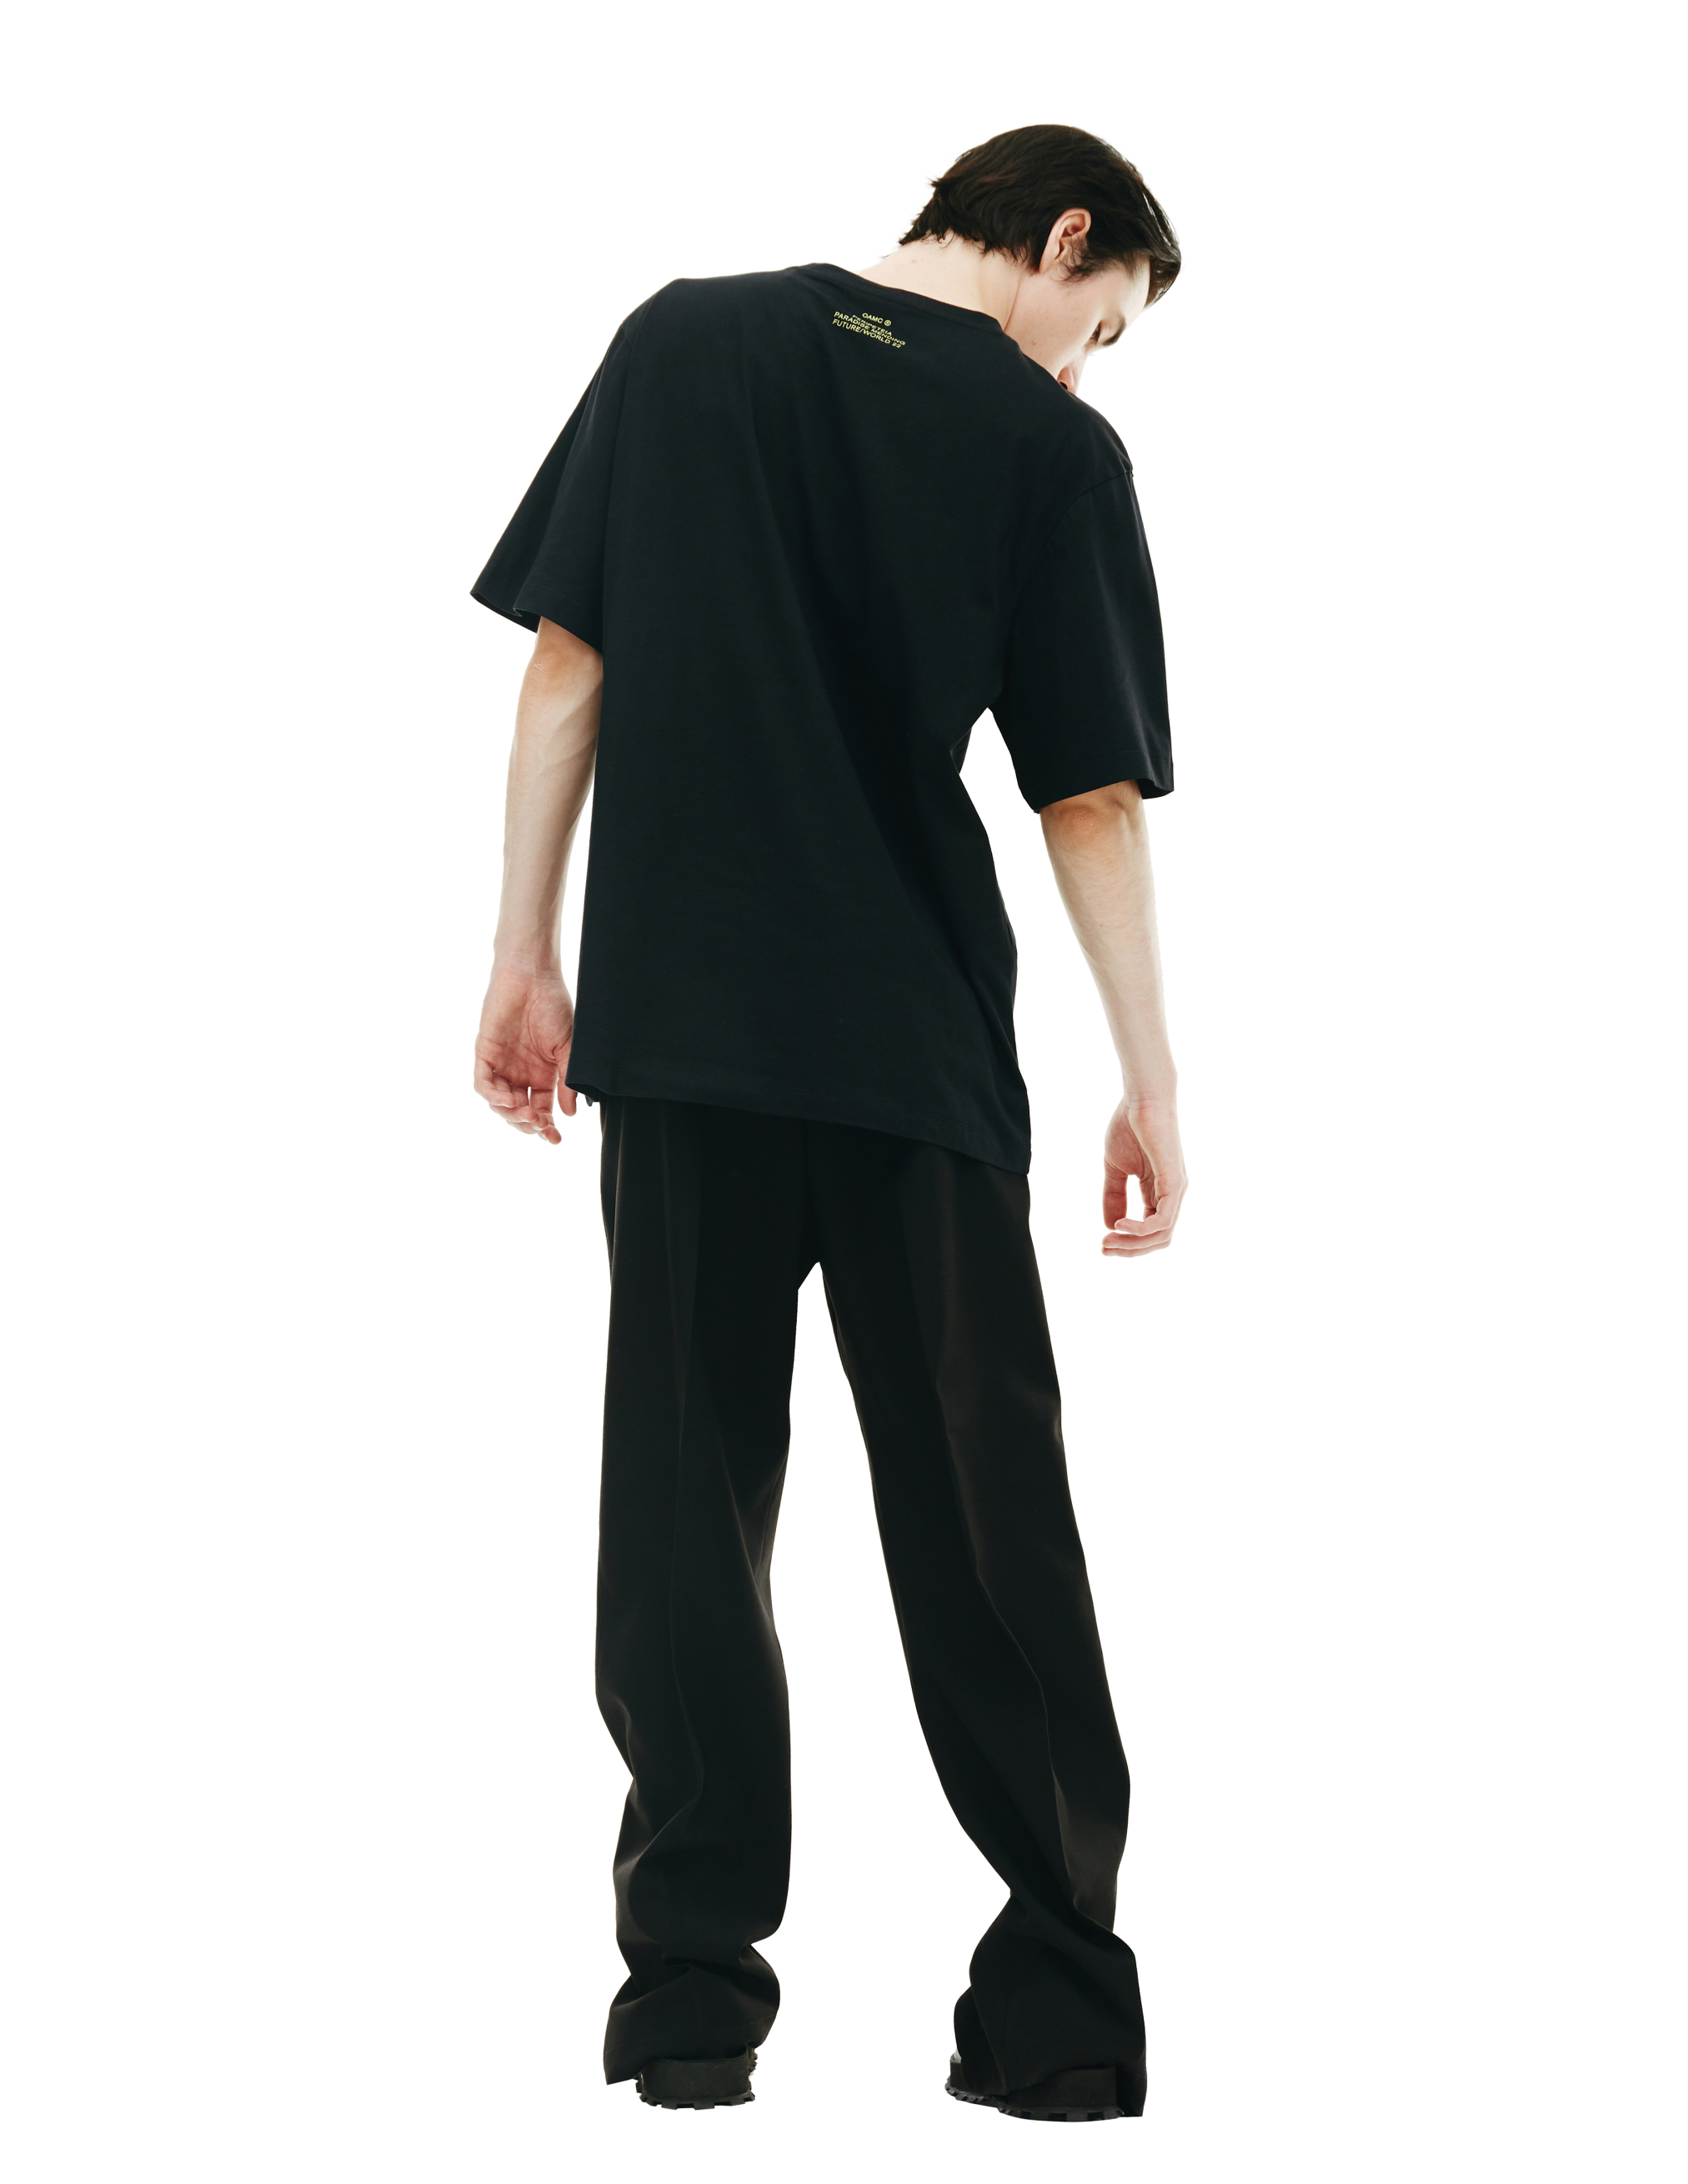 Черная футболка с принтом OAMC 22A28OAJ04/COT00744/001, размер XL;L 22A28OAJ04/COT00744/001 - фото 3